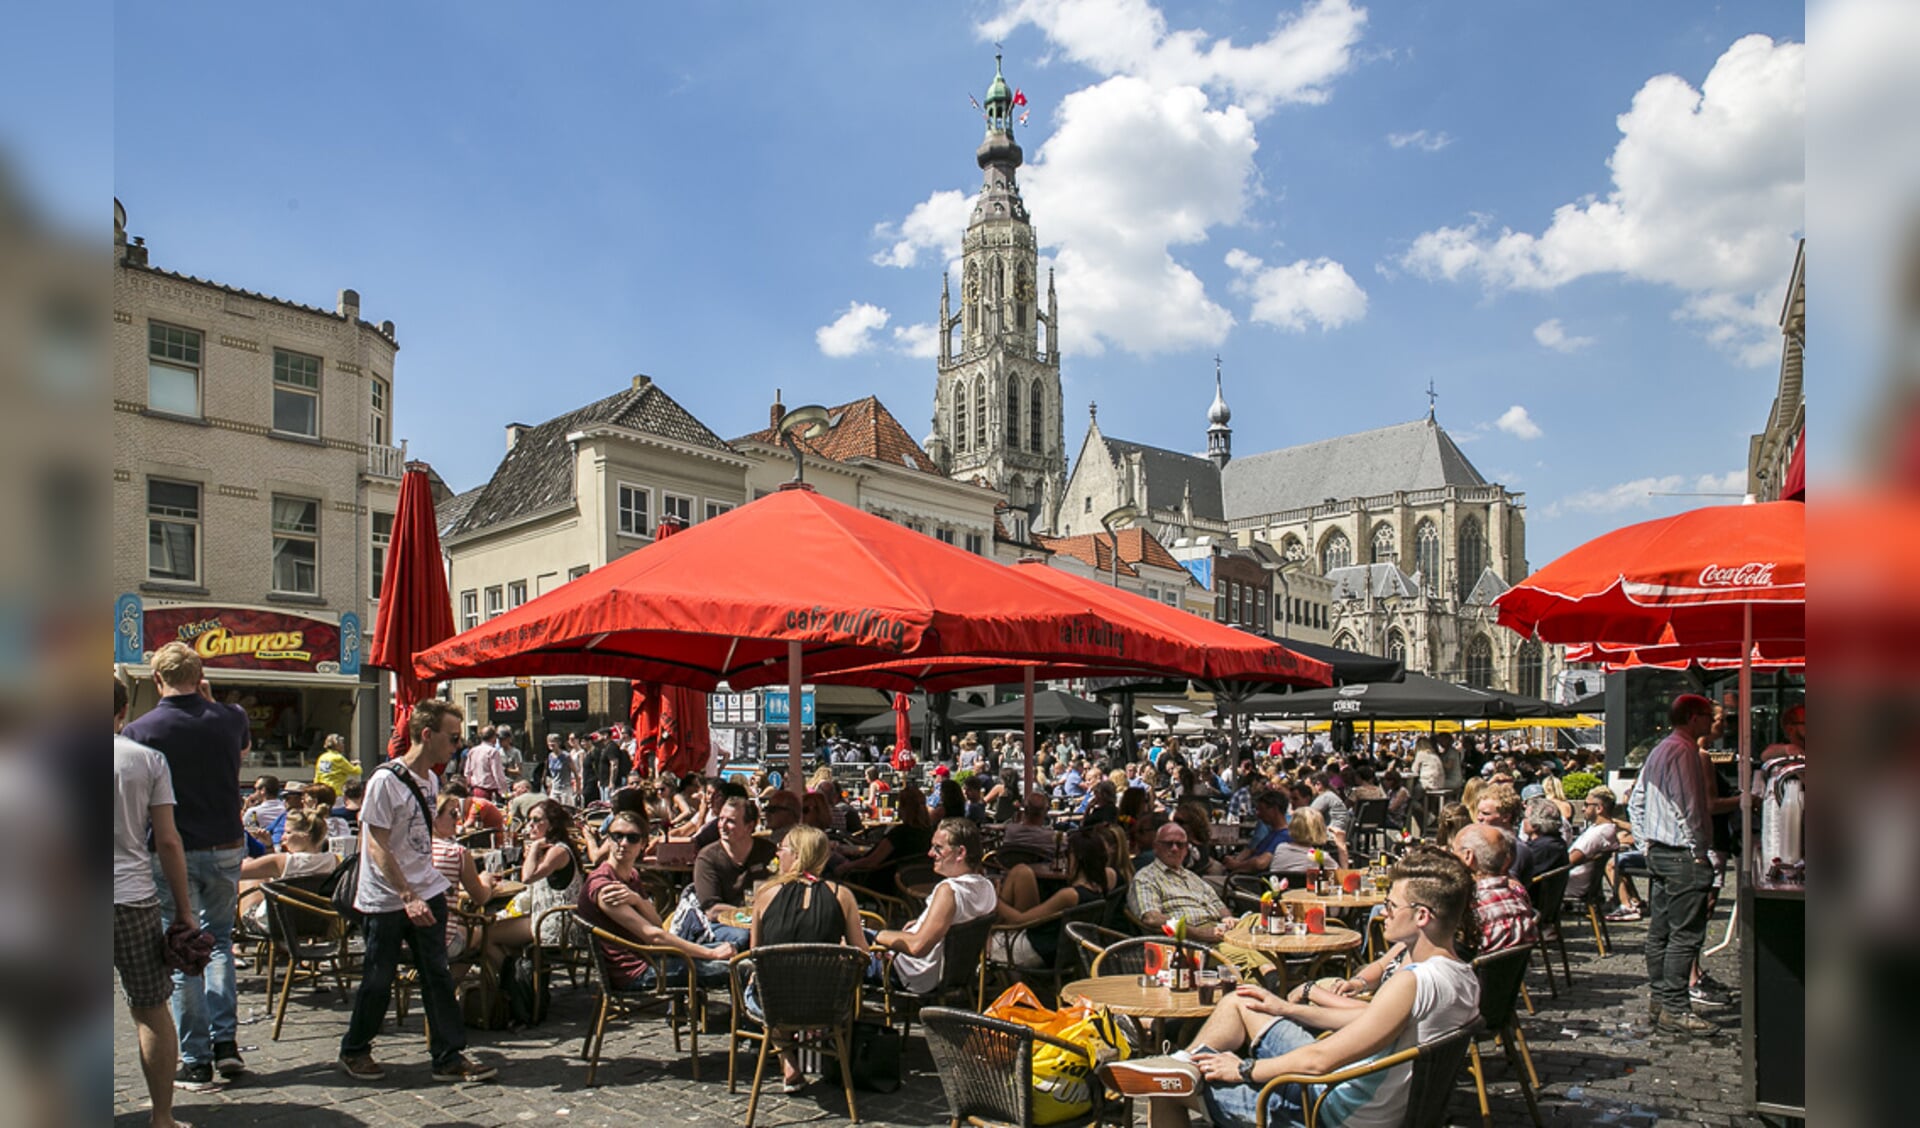 De derde dag van het Breda Jazz Festival 2016. De temperatuur overstijgt de 25 graden.